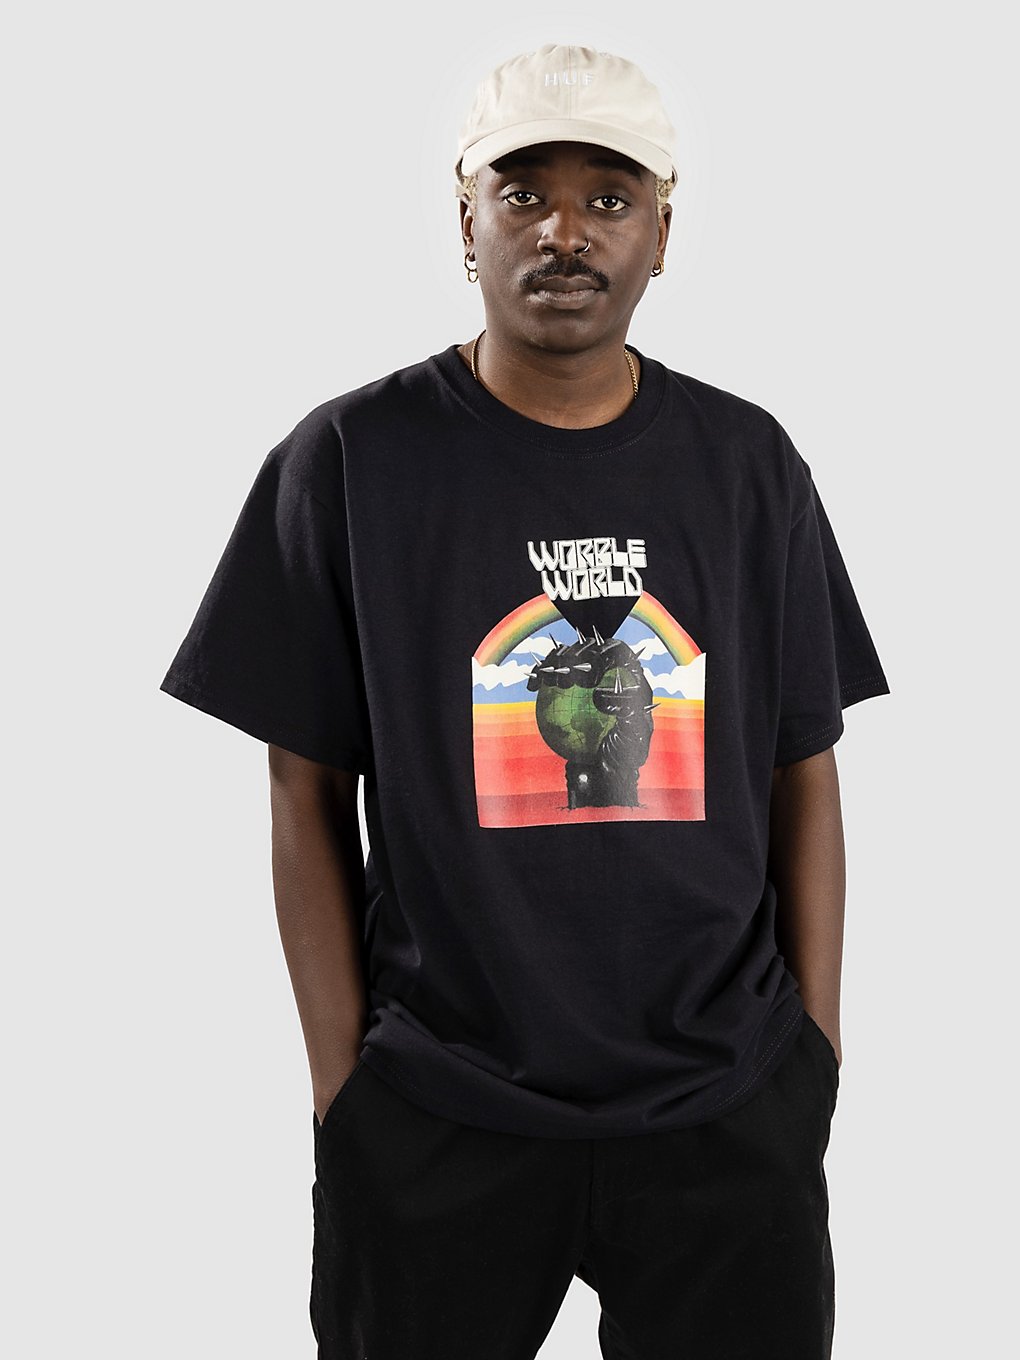 Worble World T-Shirt black kaufen